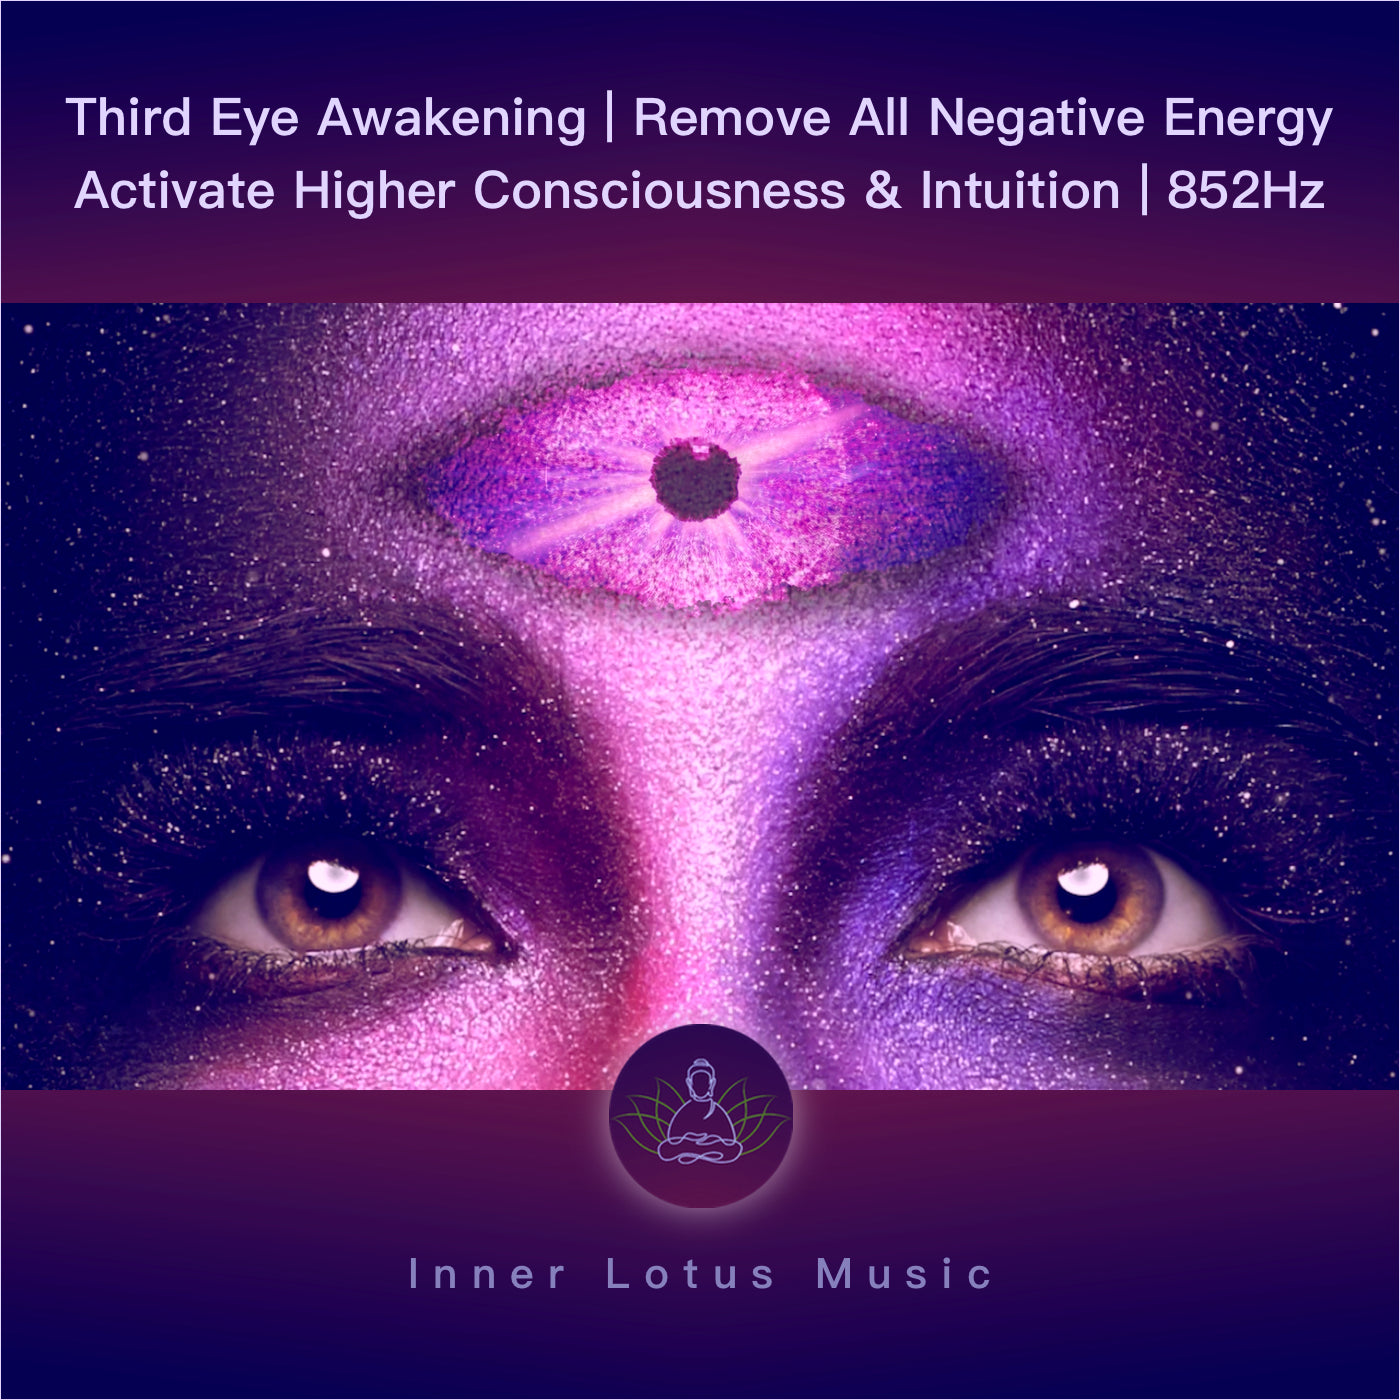 Despierta tu Tercer Ojo | Elimina Toda Energía Negativa | Activa Intuición y Conciencia Superior